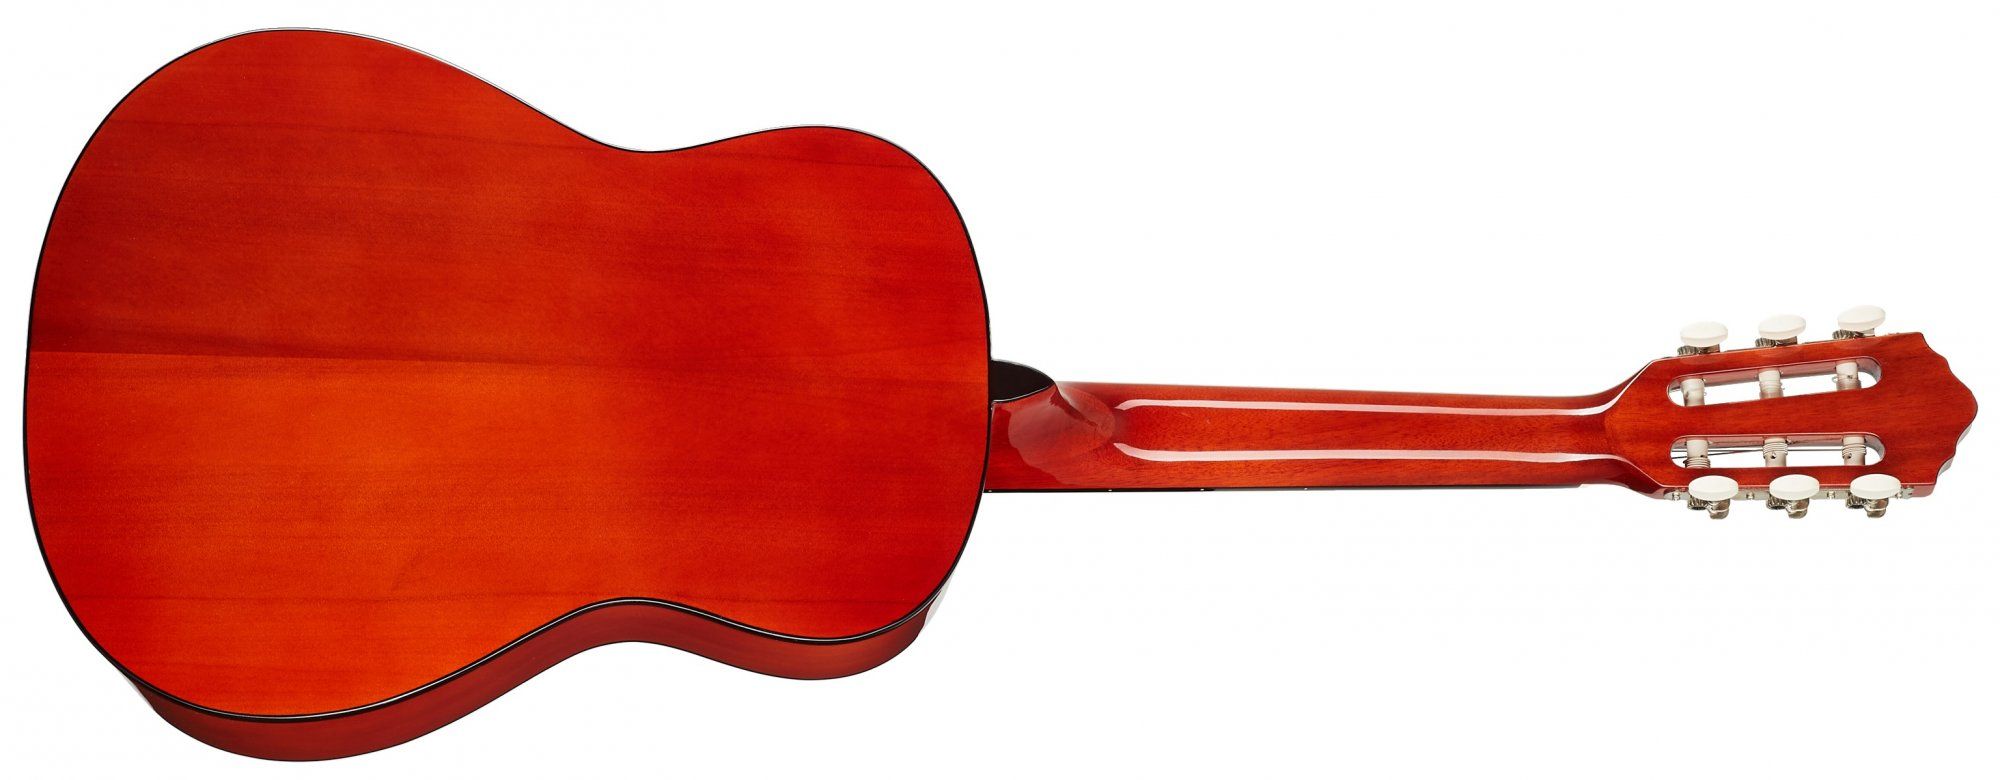  oscar schmidt gyönyörű akusztikus gitár 559 mm menzúra rétegelt test fényes felületkezelés alkalmas pengetővel és ujjal történő játszásra is 